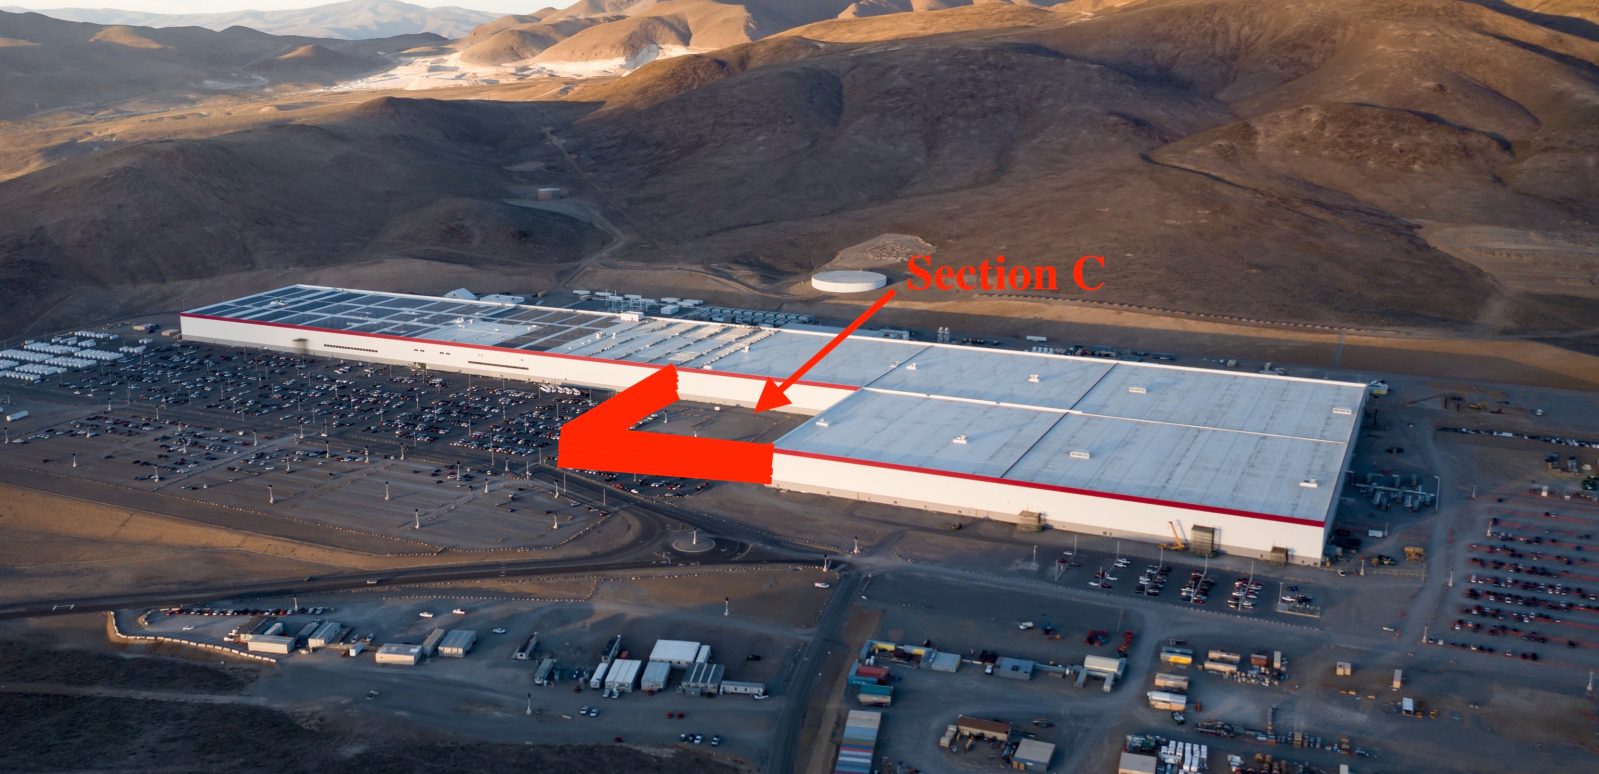 Tesla Gigafactory Nevada Section C expansion